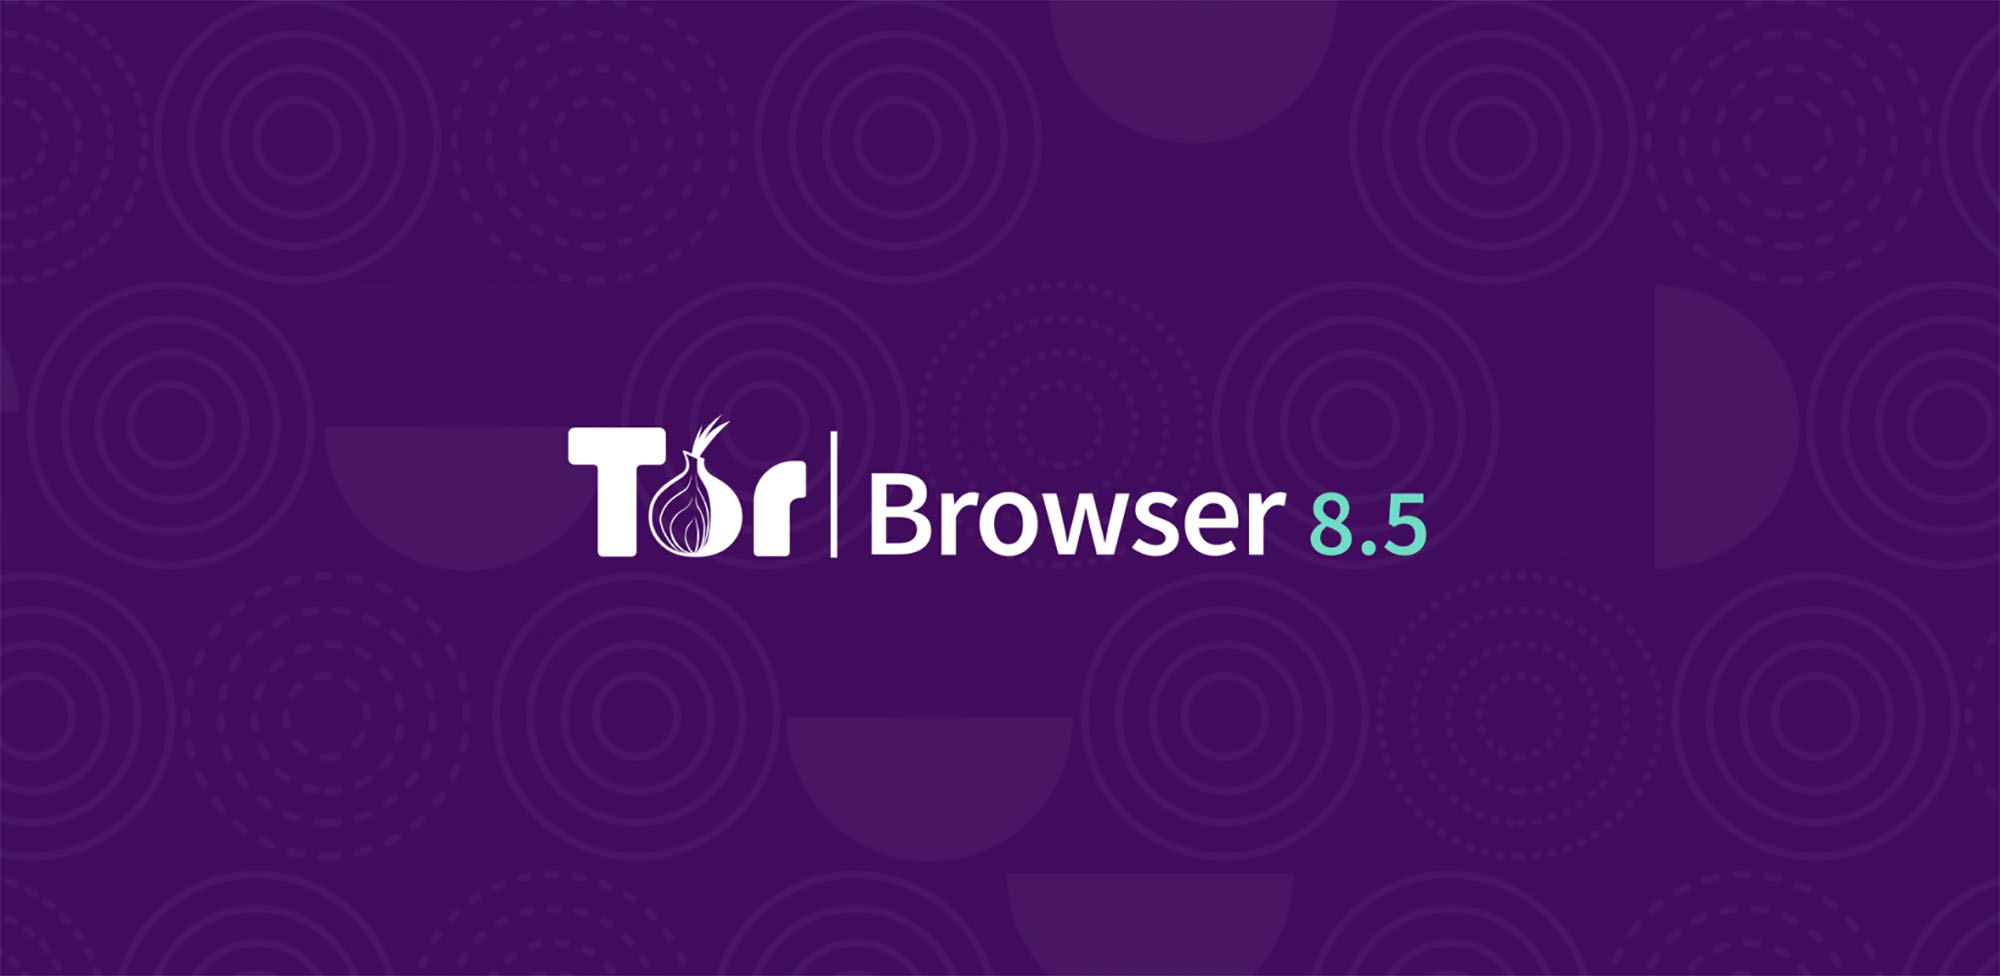 Tor browser 24 mega darknet tv мега